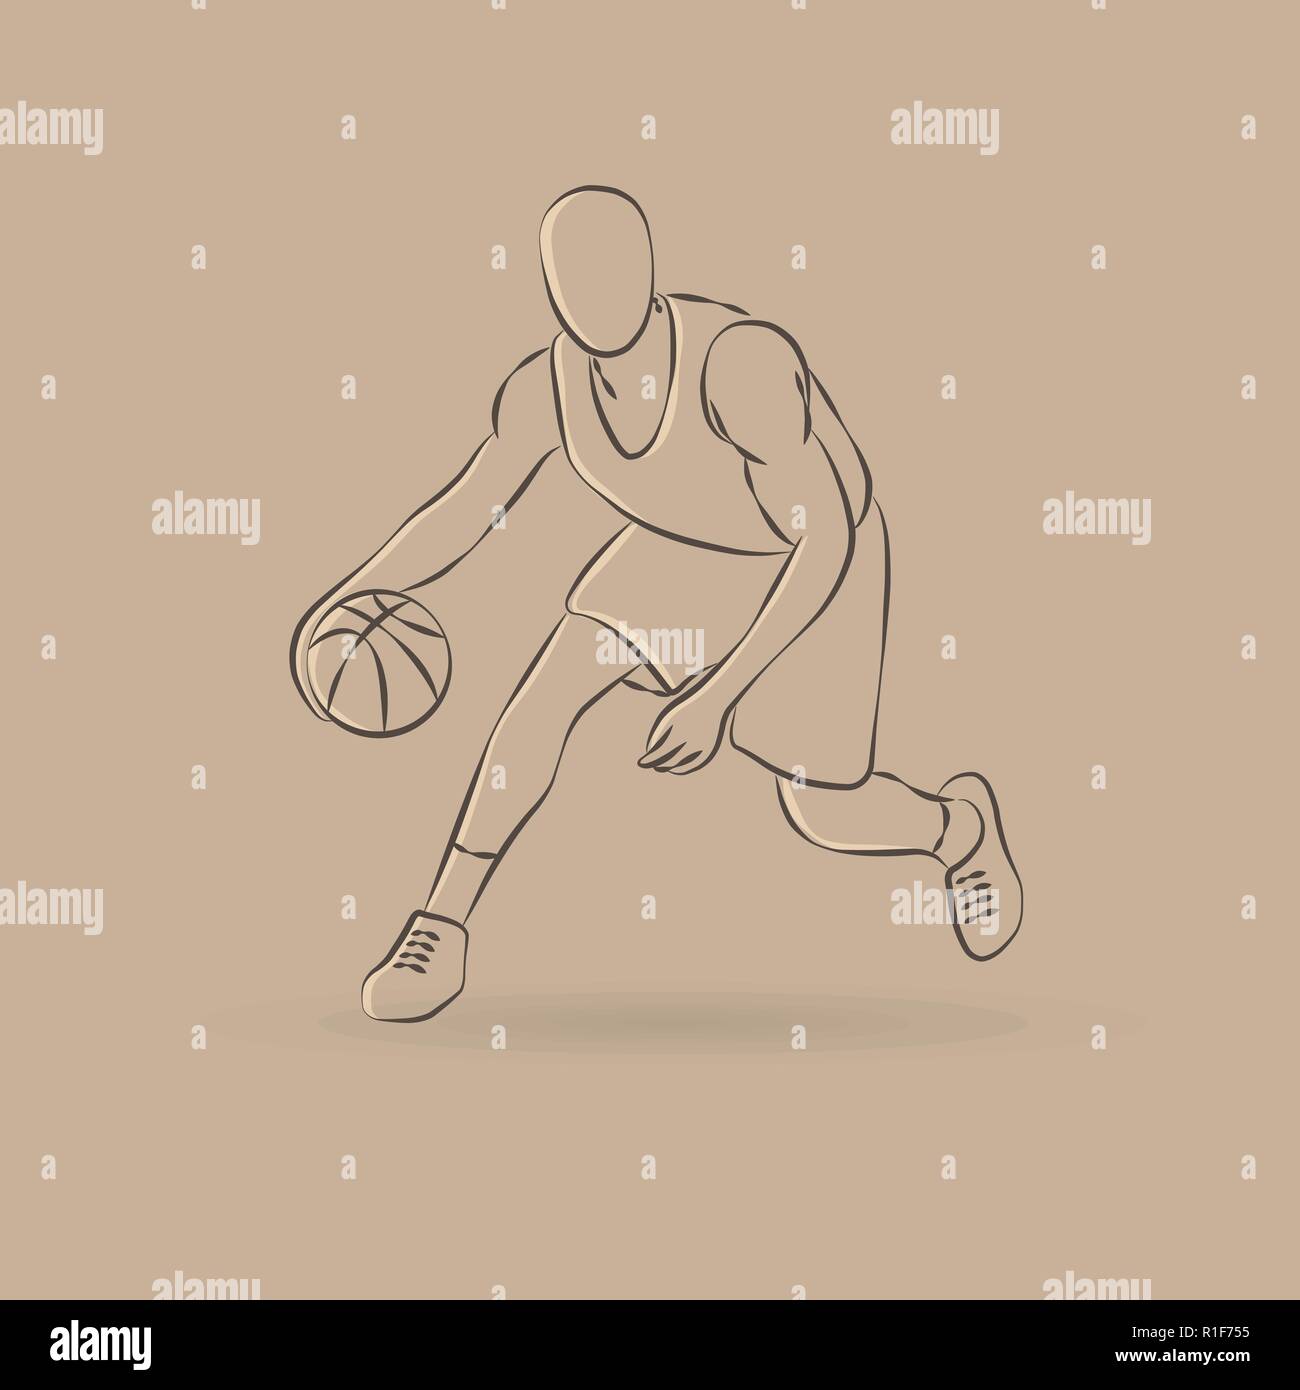 Zusammenfassung Überblick Basketball player Silhouette mit Kugel  Stock-Vektorgrafik - Alamy